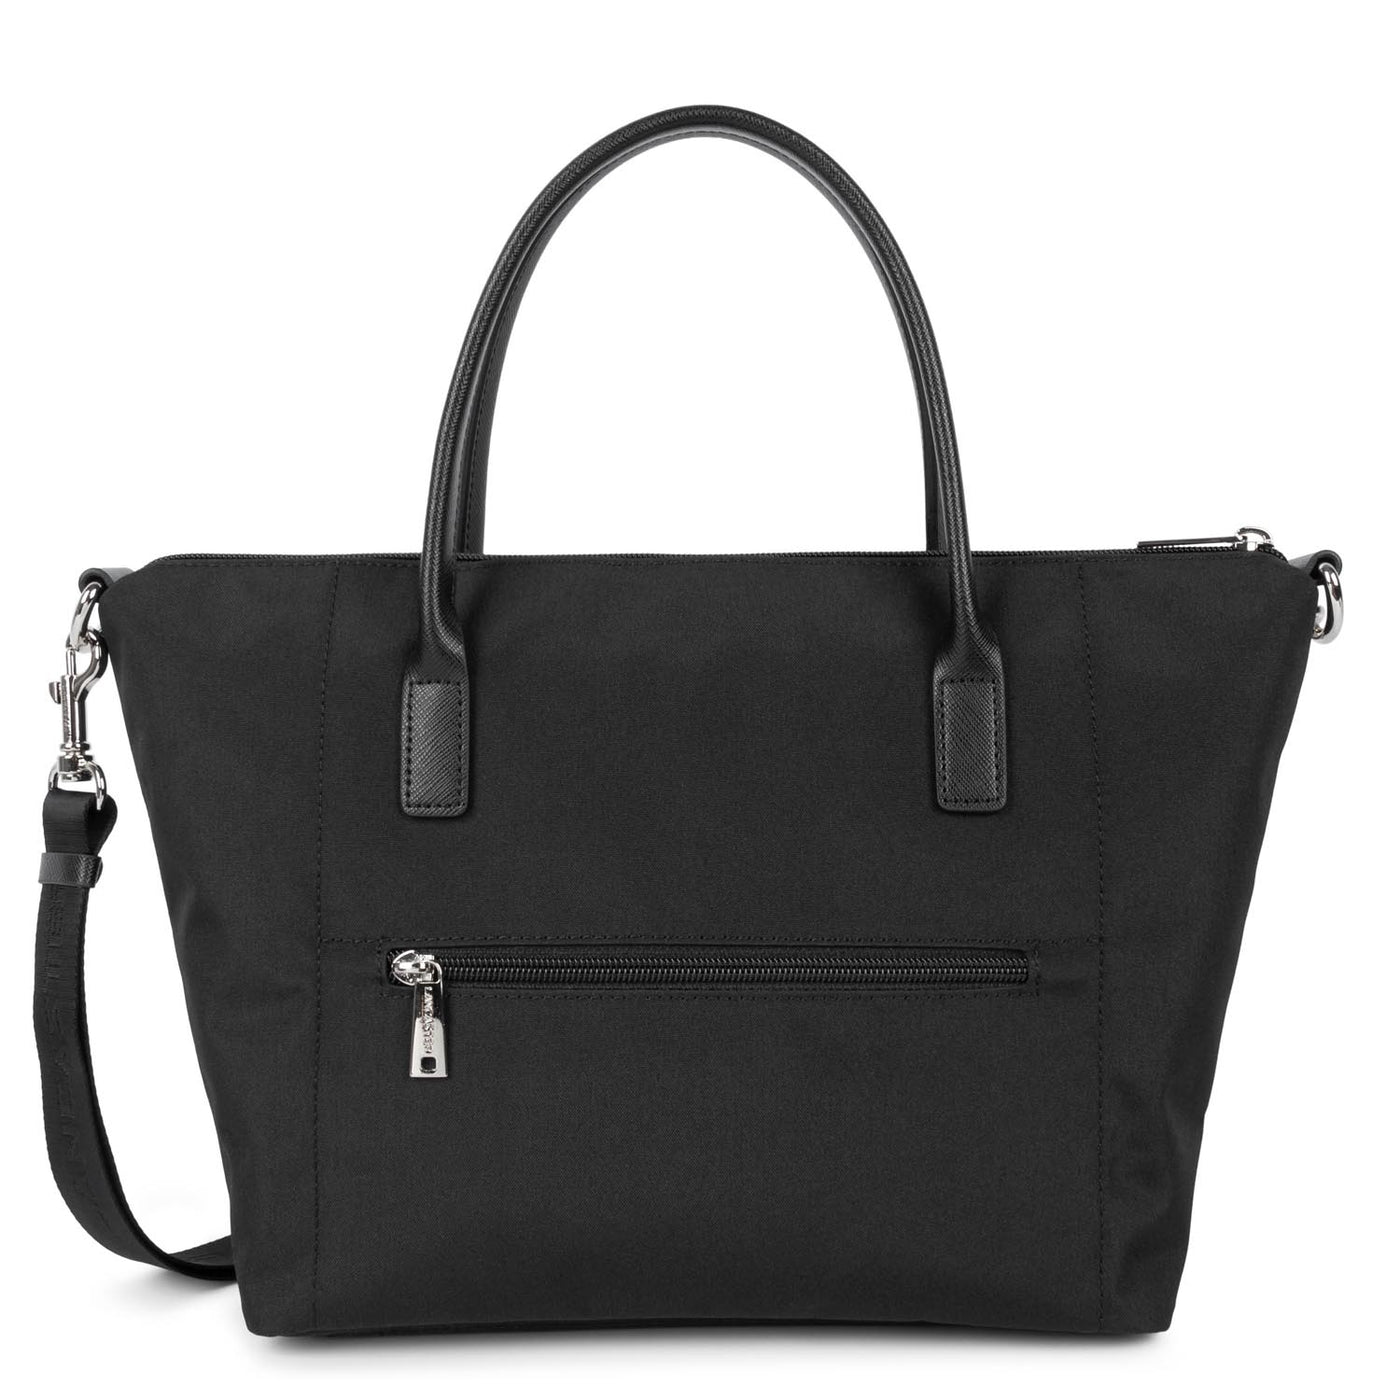 tote bag - smart kba #couleur_noir